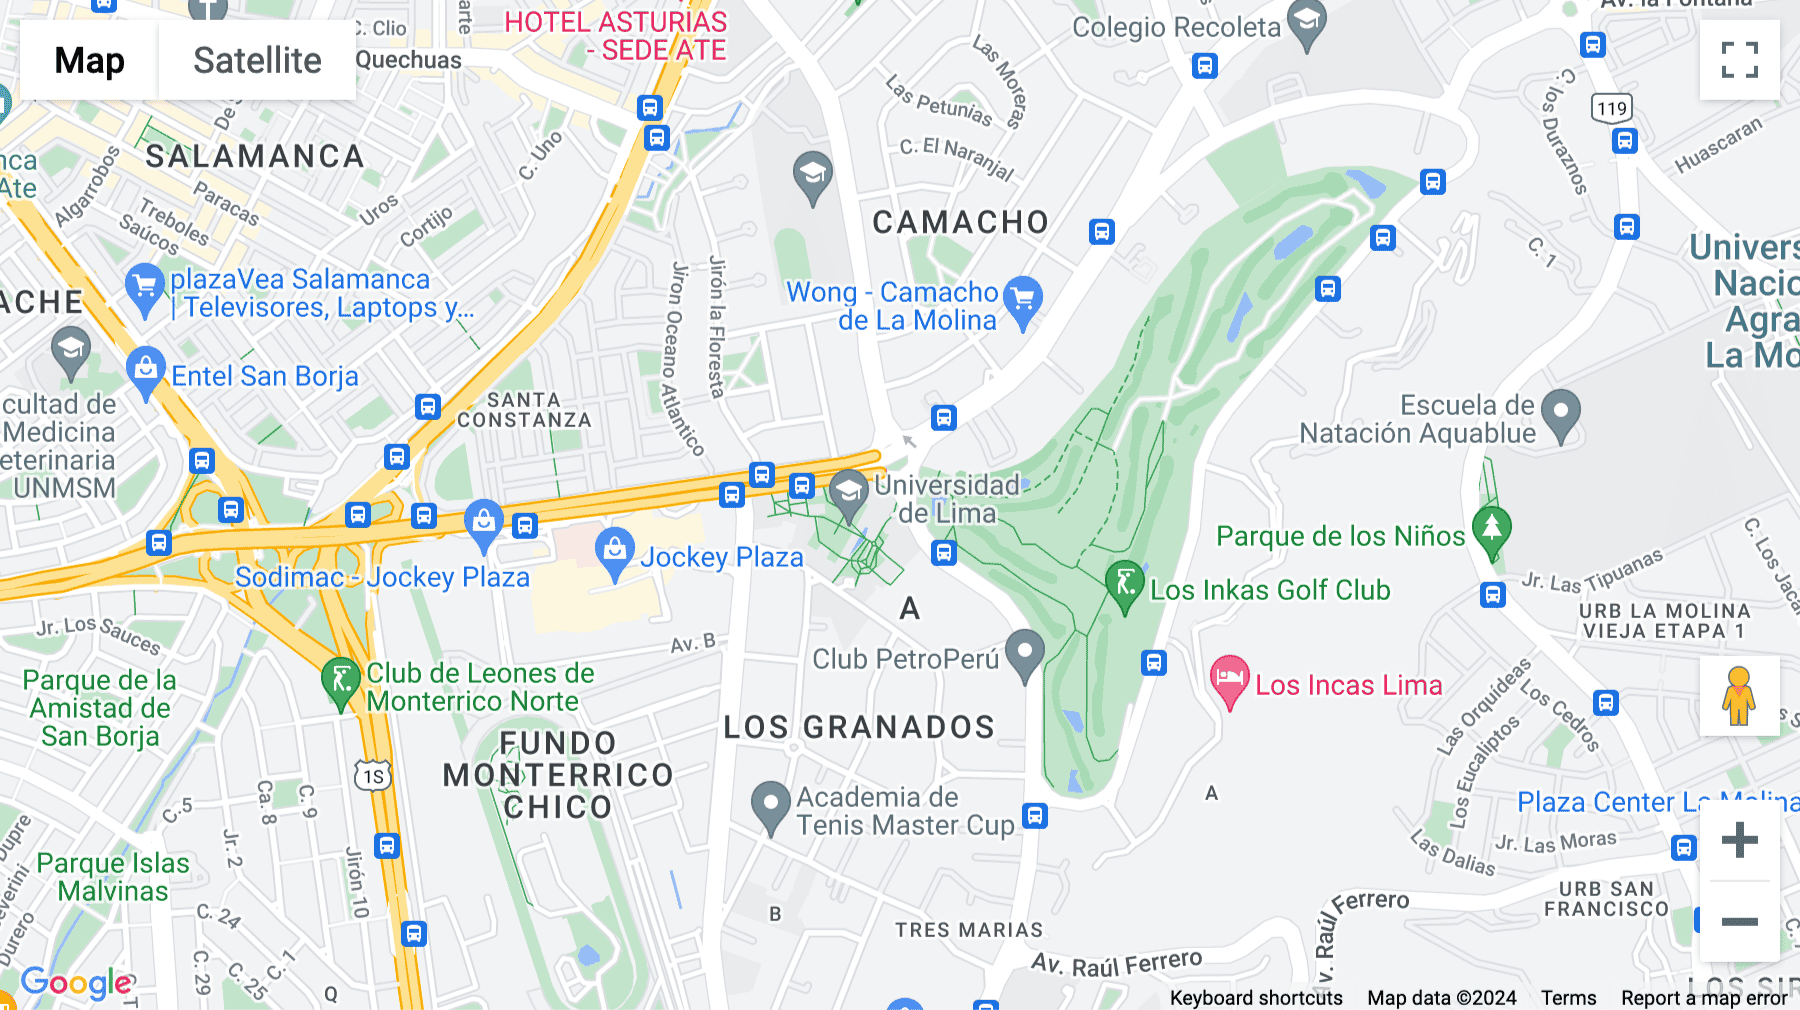 Click for interative map of Av. Circunvalación del Club Golf Los Incas 134, piso 13, Lima